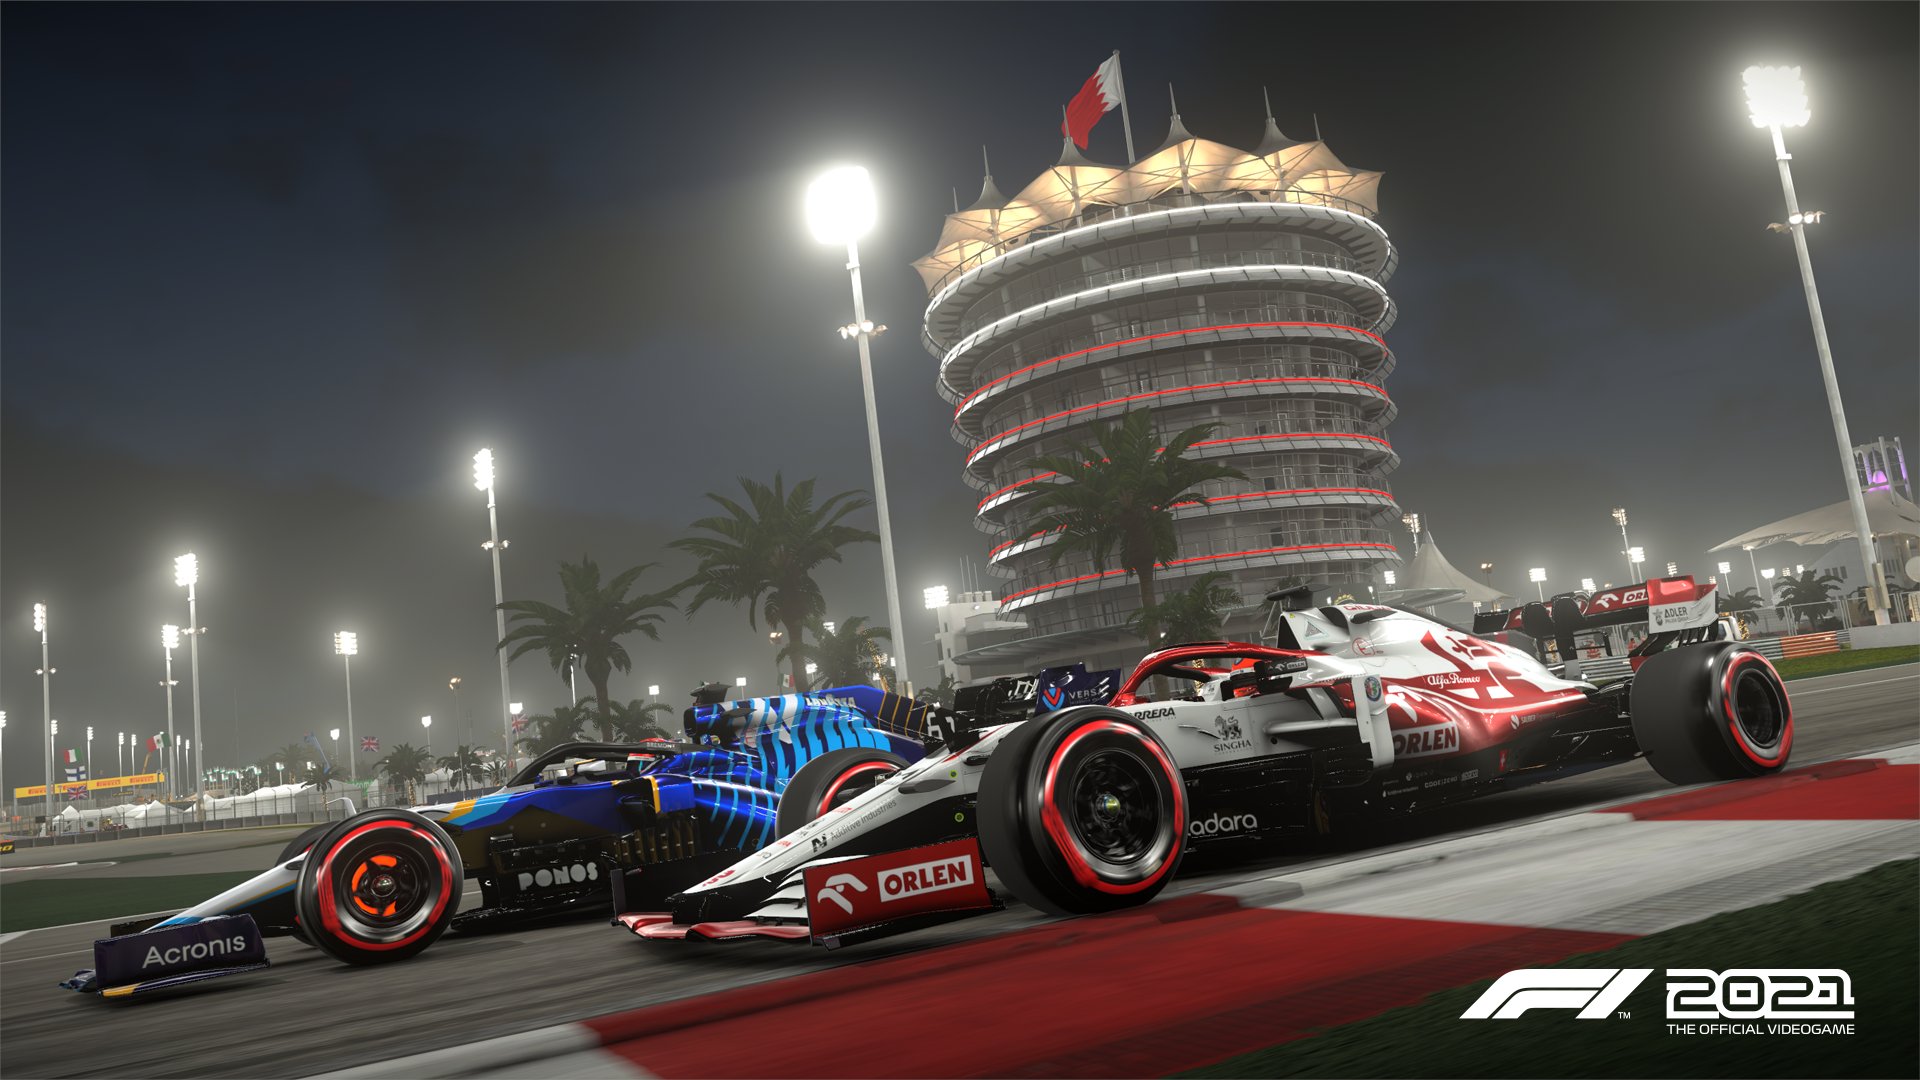 F1 22 Keine Supercars im Multiplayer und Cross-Play erst nach Launch laut Gerücht